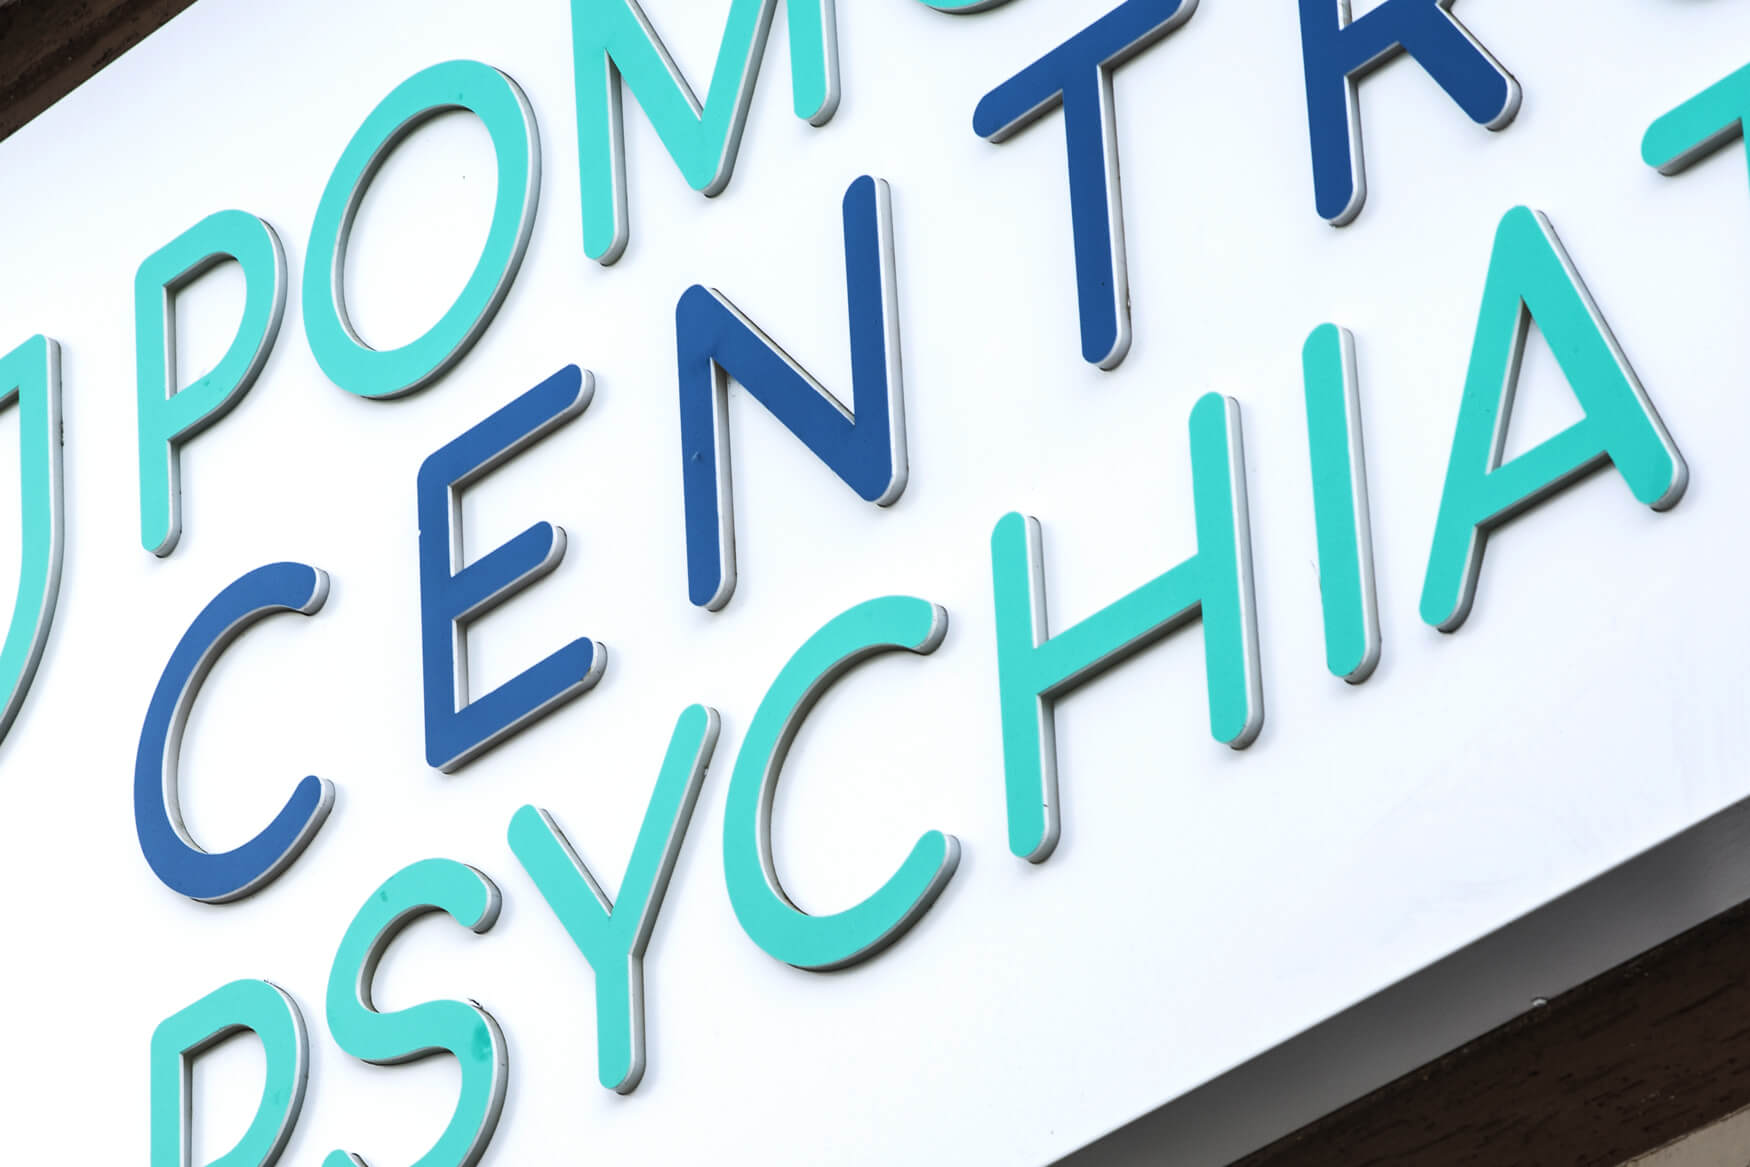 centro pomeraniano di psichiatria - Centro Psichiatrico di Pomerania - cassone pubblicitario luminoso in dibond posto sopra l'ingresso